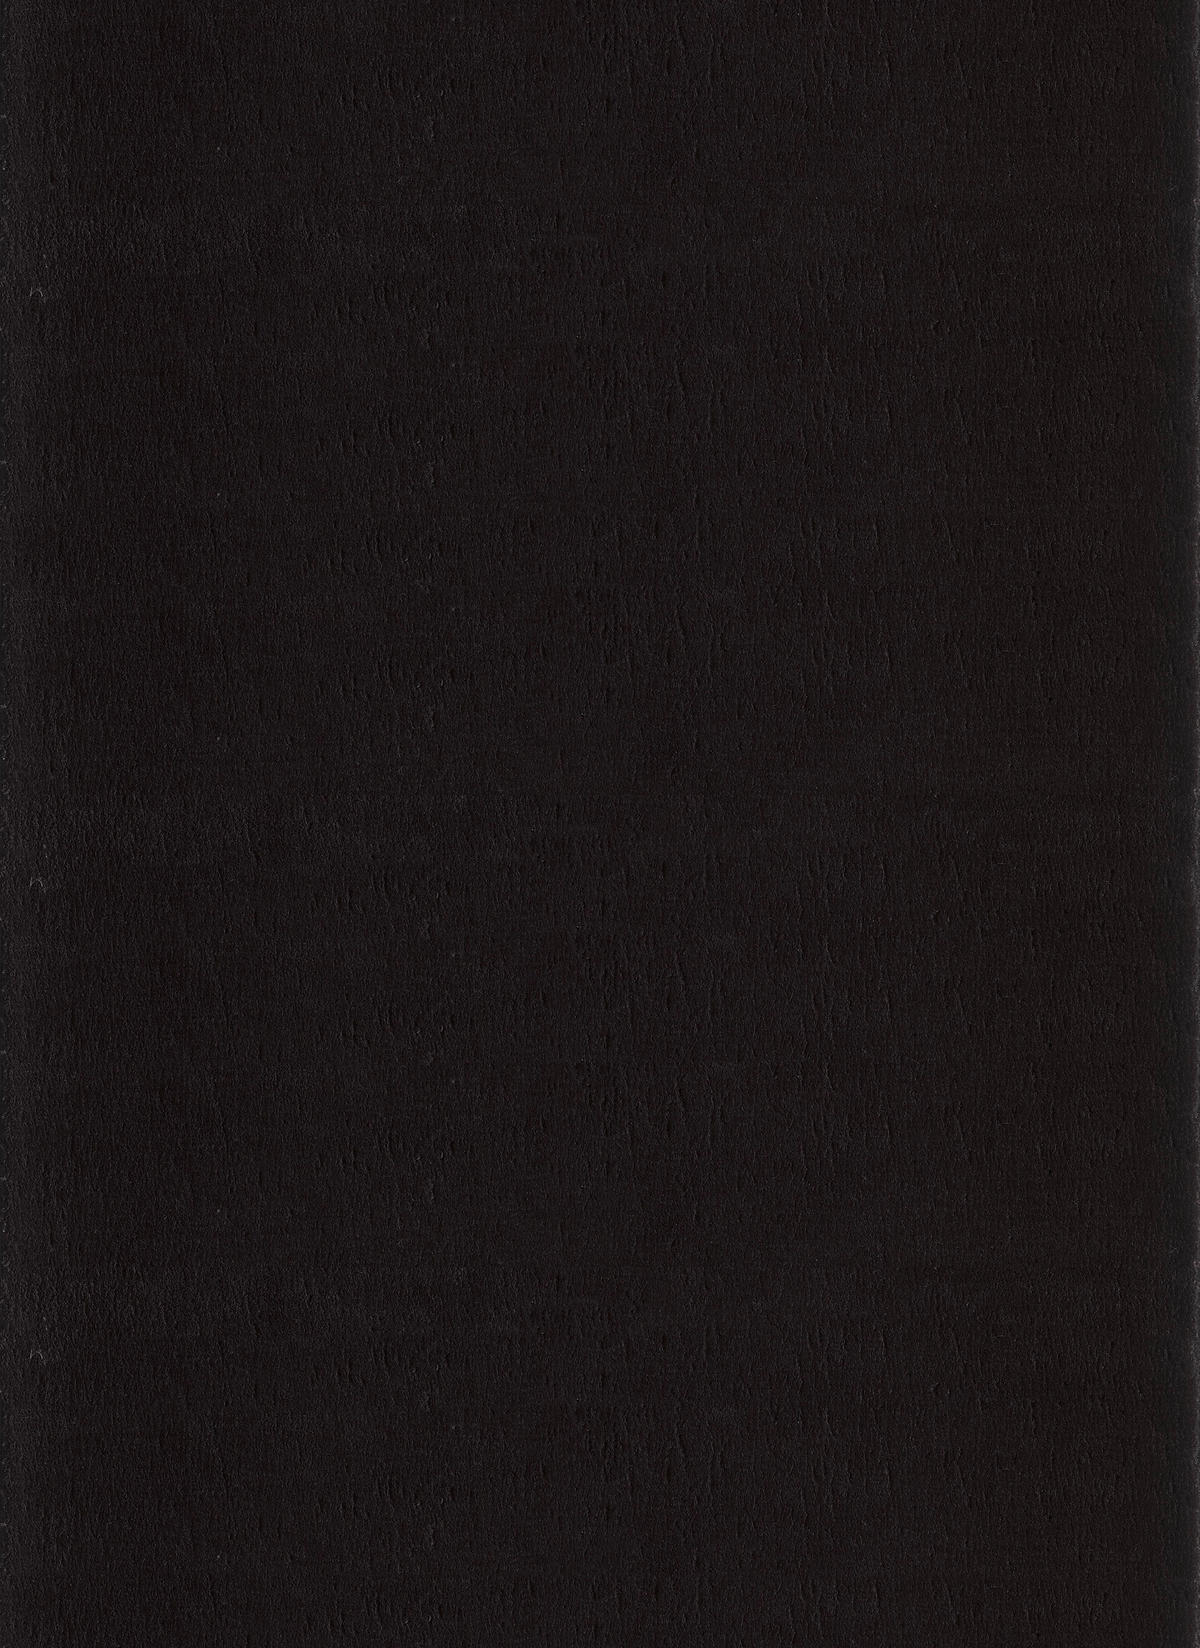 HOCHFLORTEPPICH 240/340 cm Catwalk  - Schwarz, Basics, Textil (240/340cm) - Novel